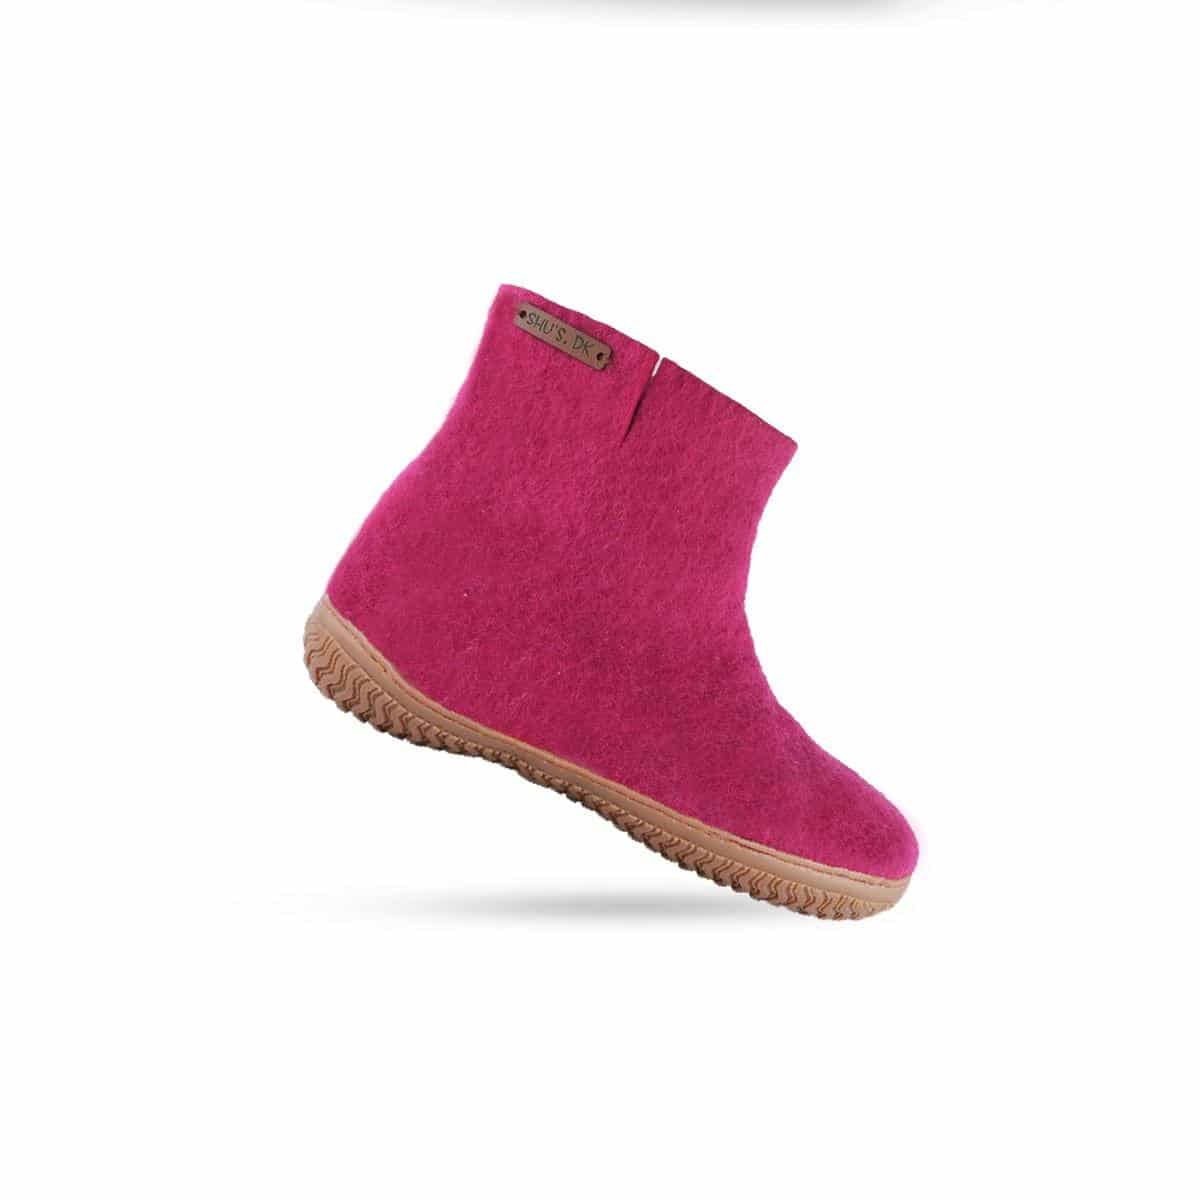 Billede af Uldstøvle (100% ren uld) Model Pink m/gummisål - Dansk Design fra SHUS